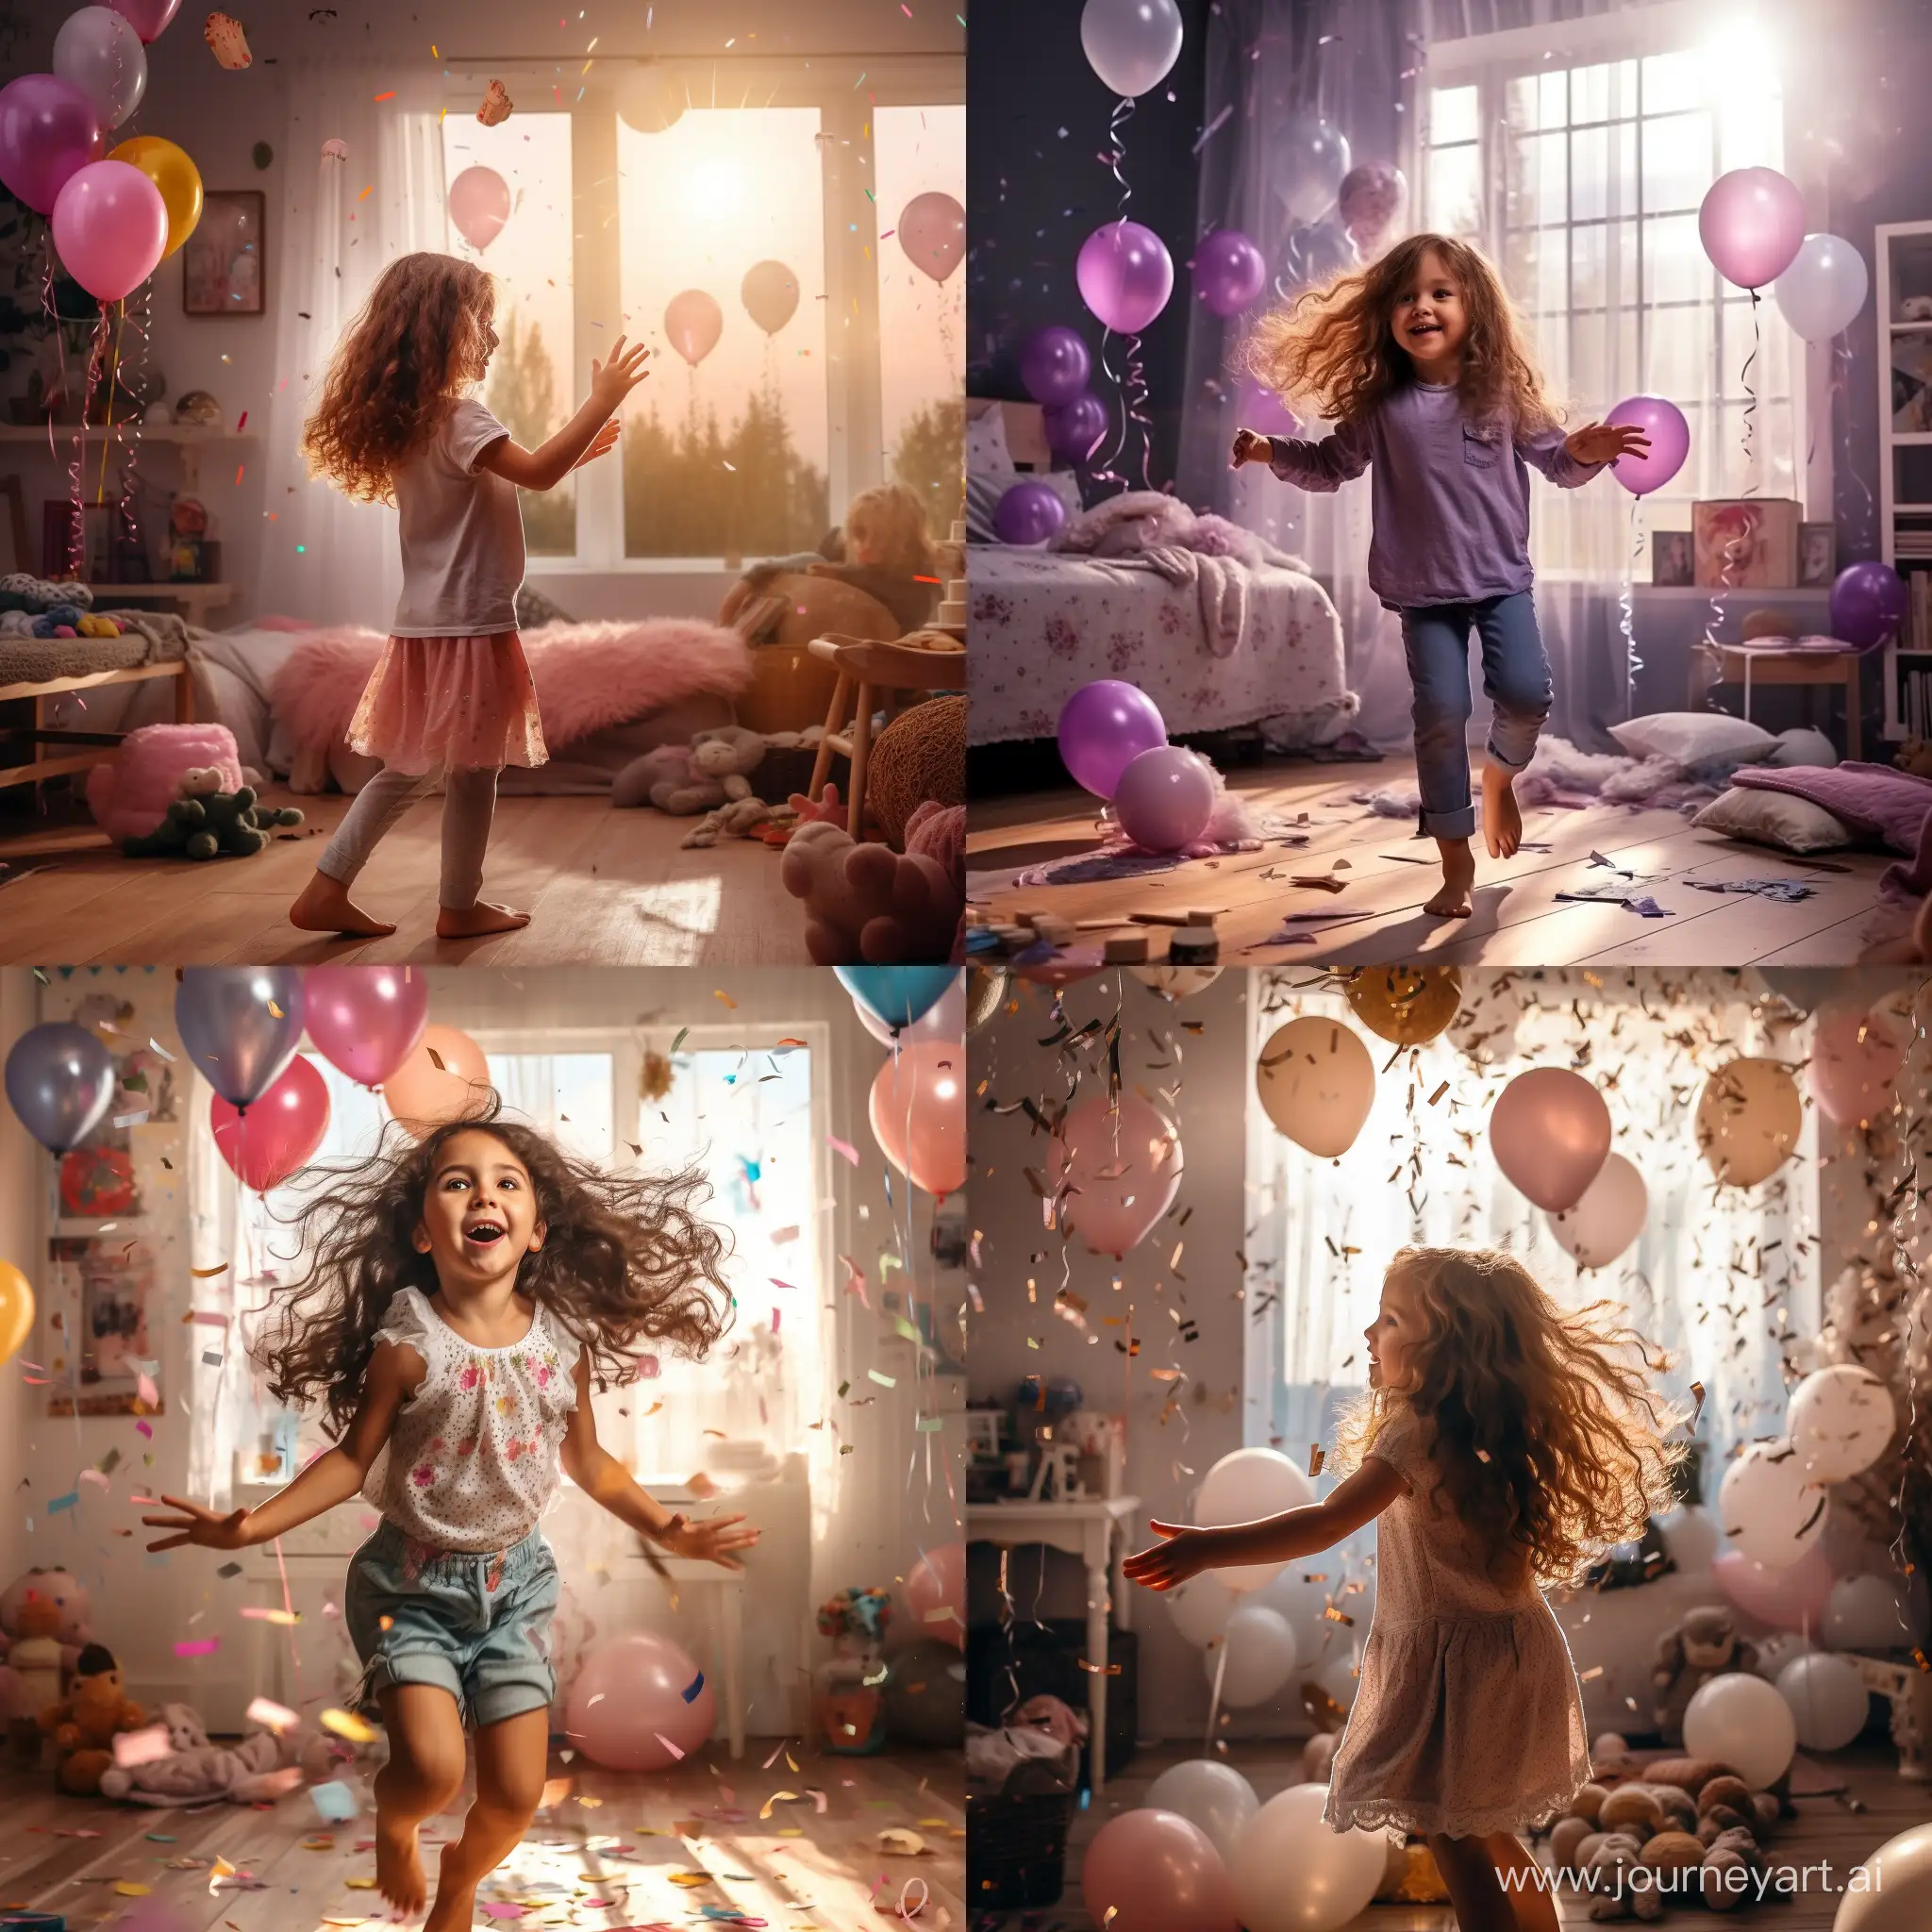 在敞亮的房间里小女孩在在自己生日派对上给大家跳舞简洁的写实照片